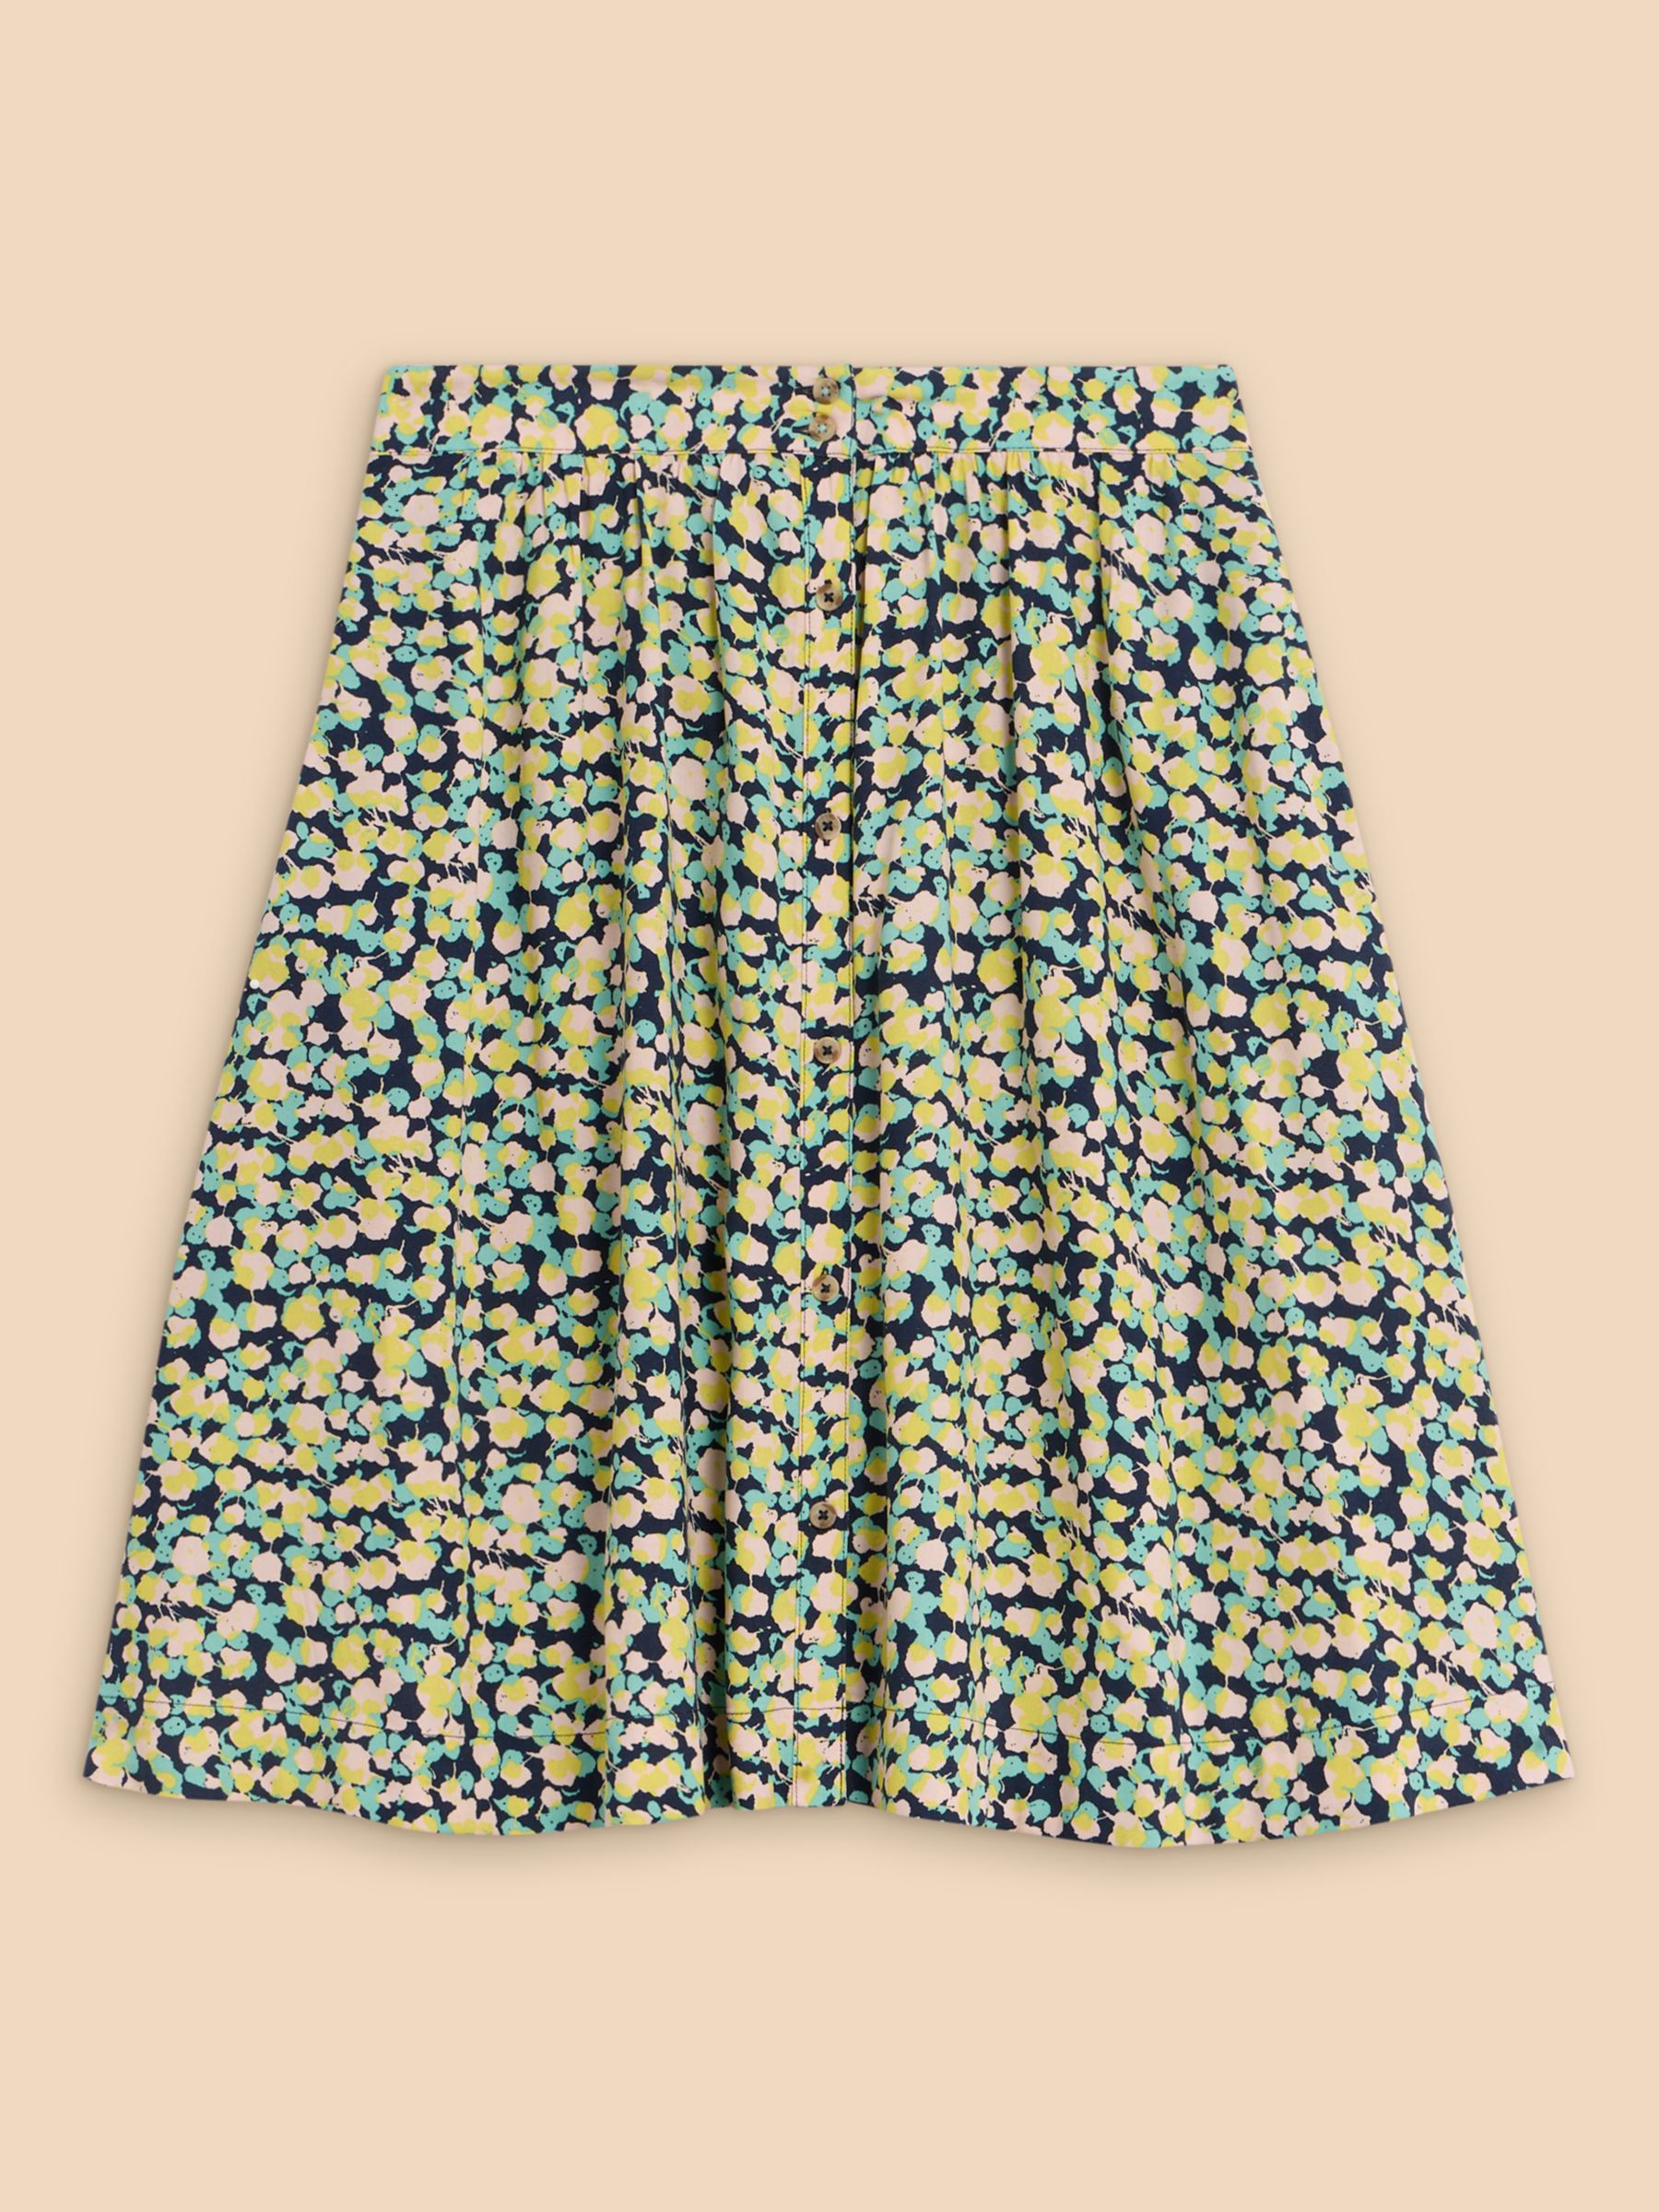 Buy White Stuff Sarah Ecovero Knee Length Skirt, Navy/Multi Online at johnlewis.com